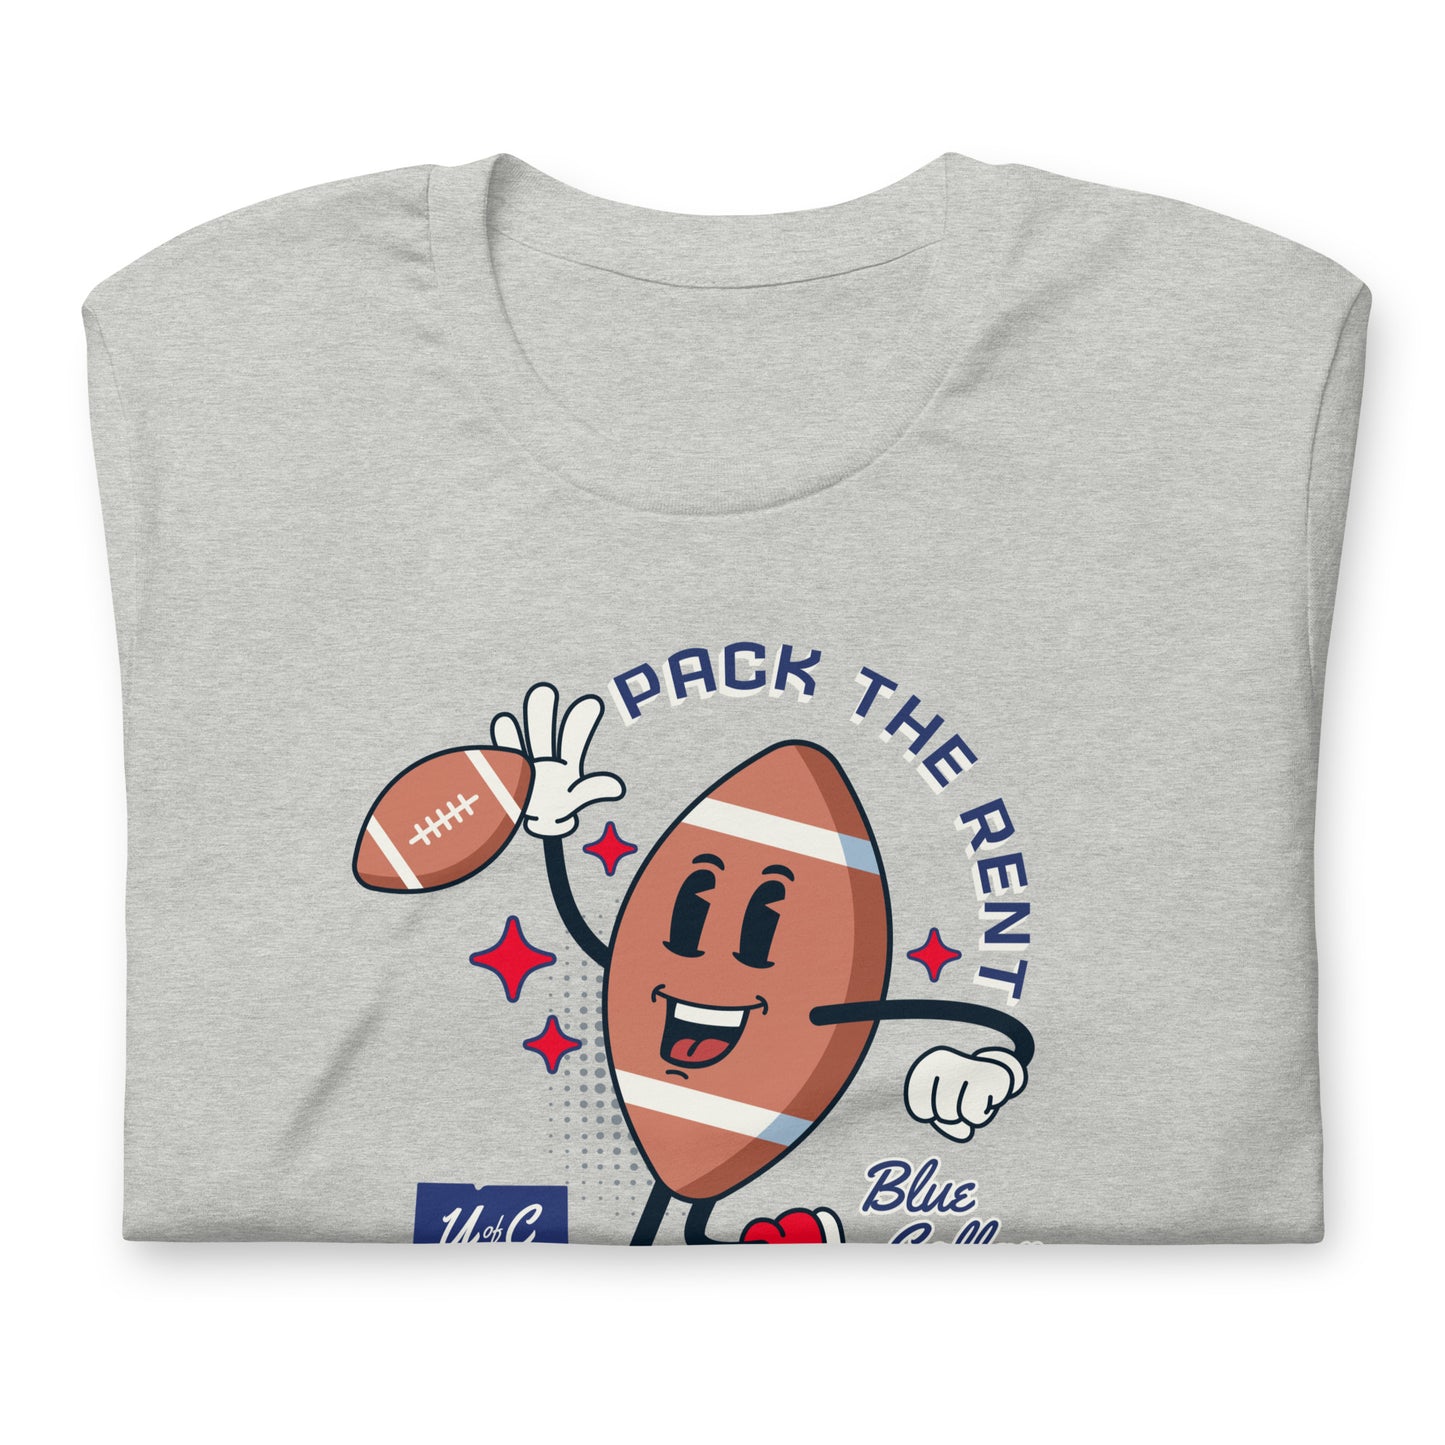 Pack The Rent Cartoon Football T-shirt